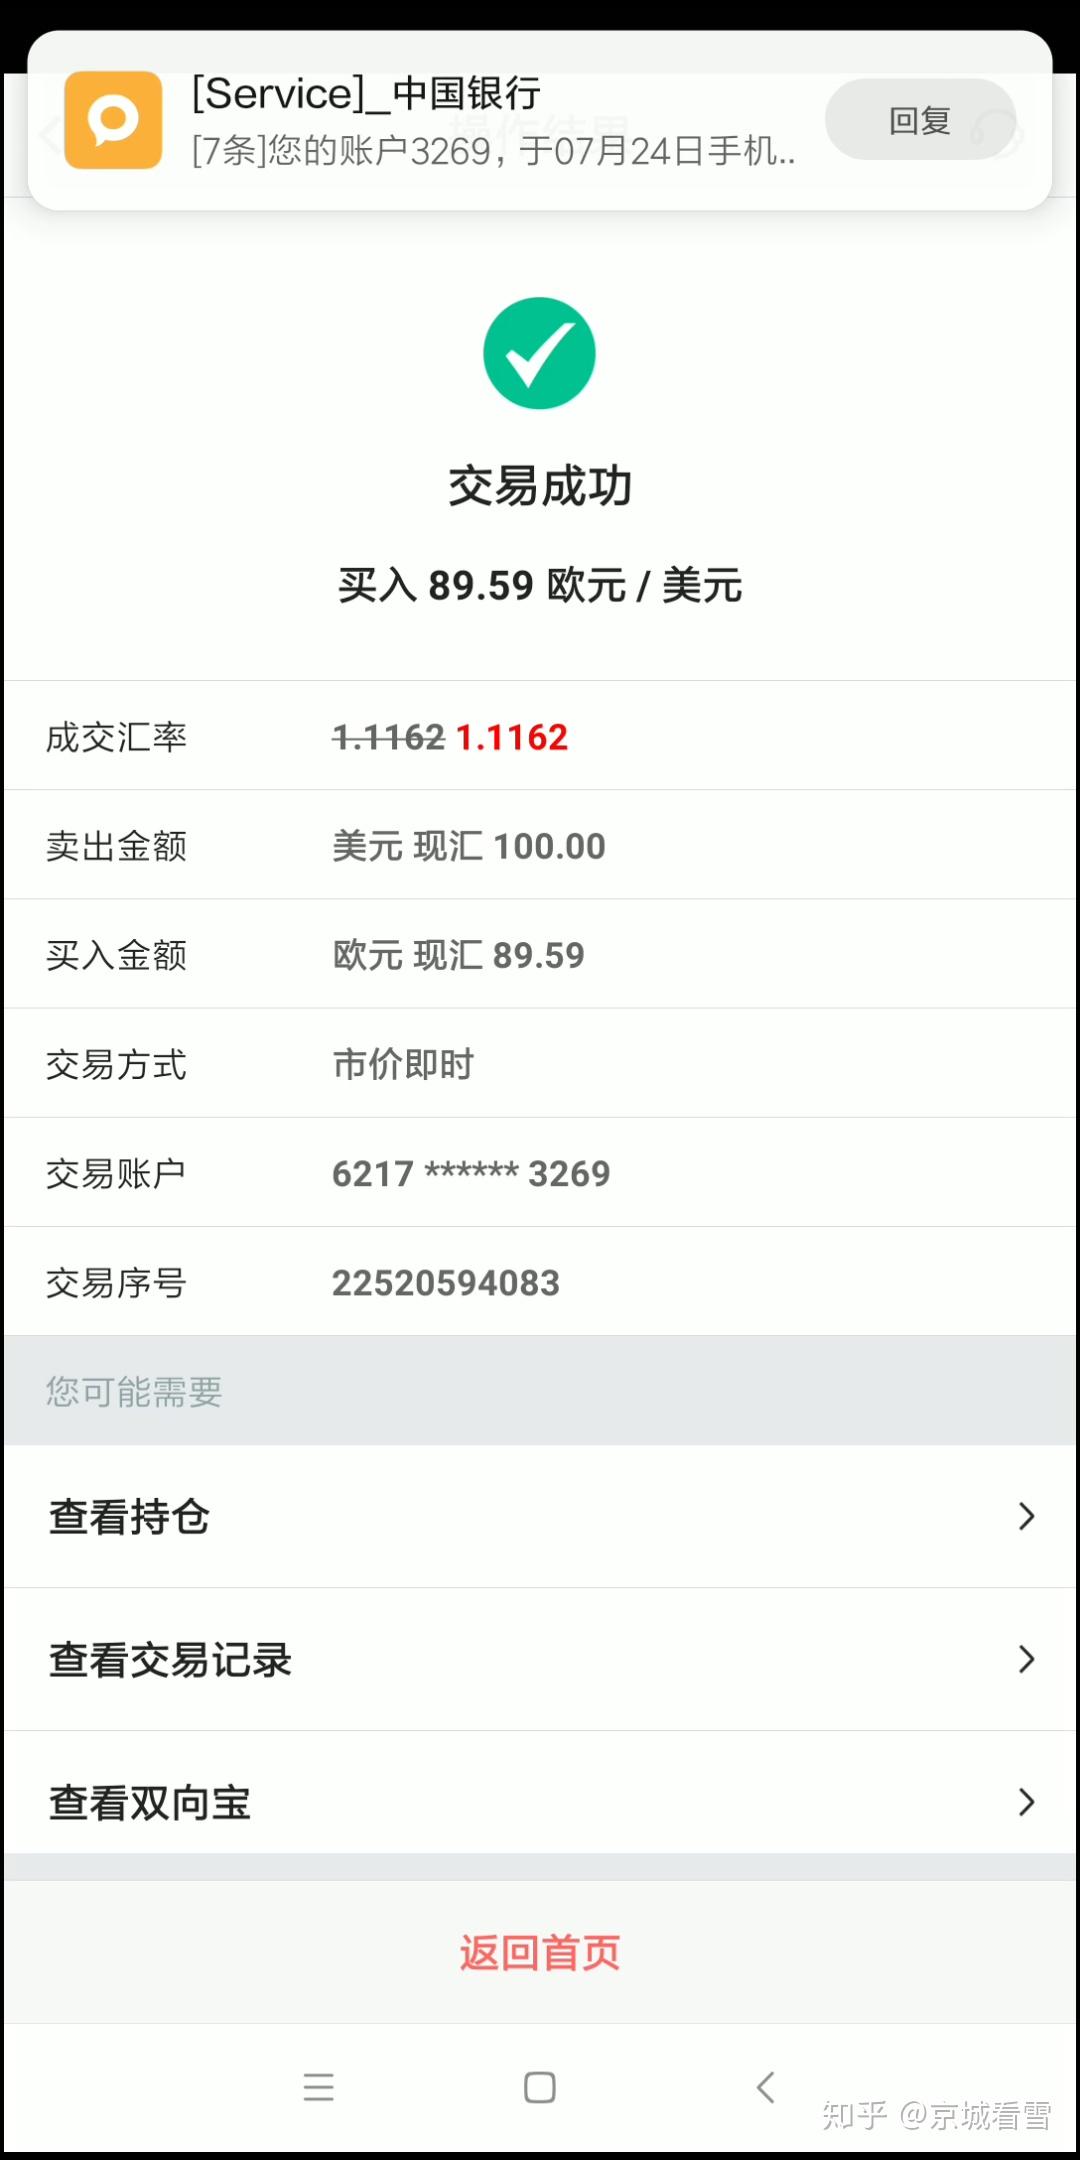 中国银行股份有限公司存款交易明细对账单 (底版)_文档下载